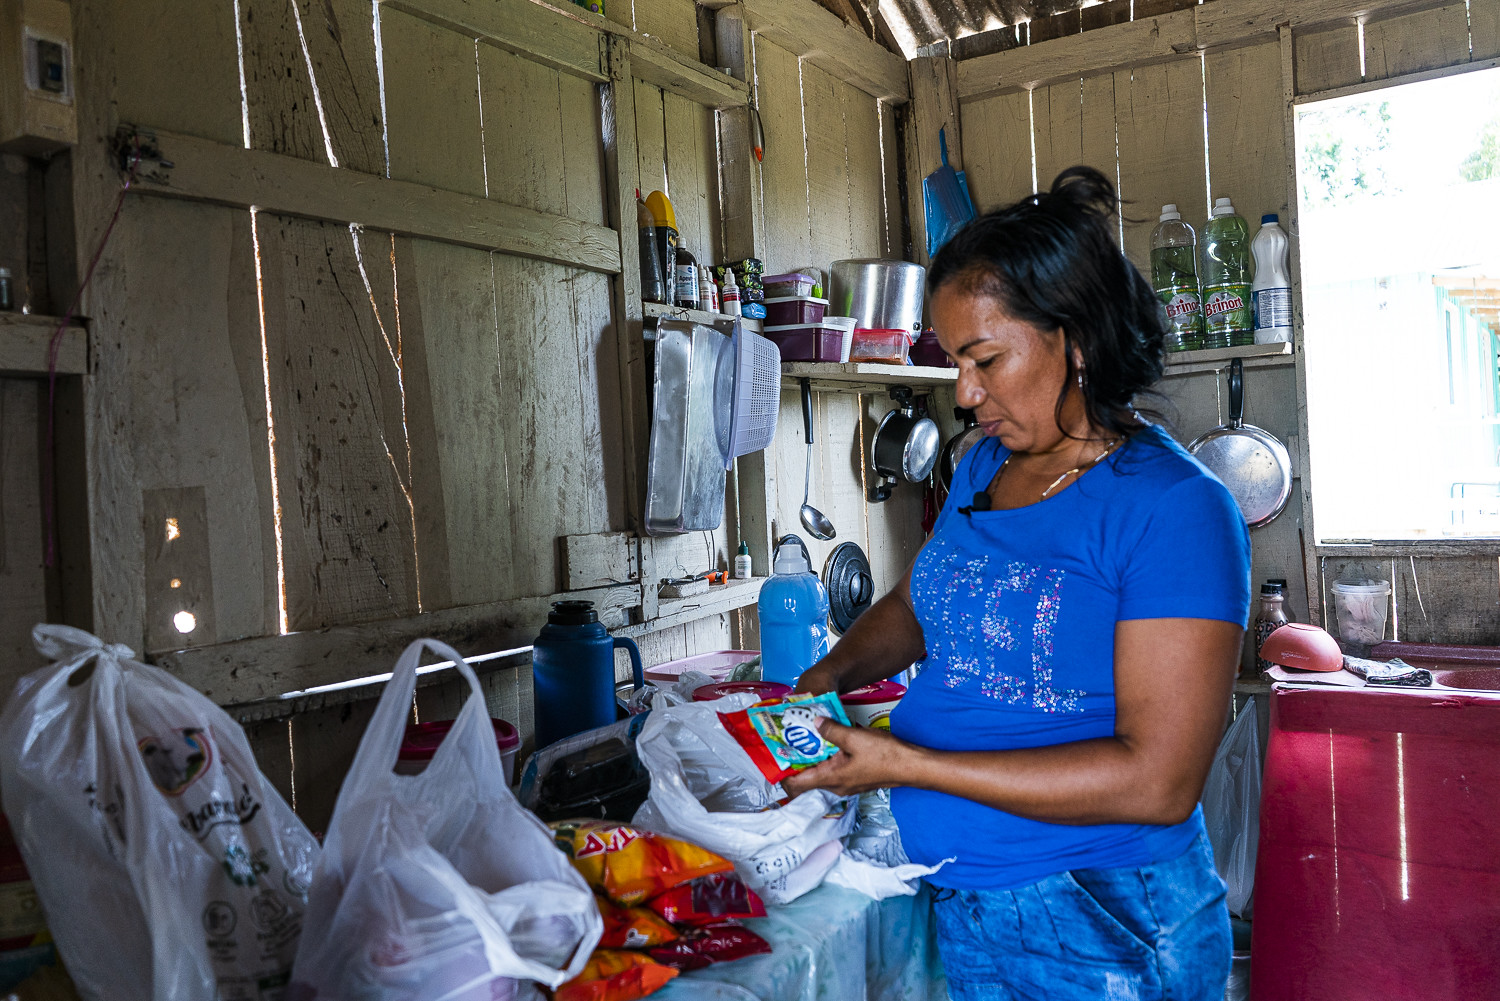 Economia do cuidado: mulheres cuidam da casa, dos filhos e  idosos da família, em trabalho geralmente não remunerado. Foto: Juliana Pesqueira/Amazônia Real